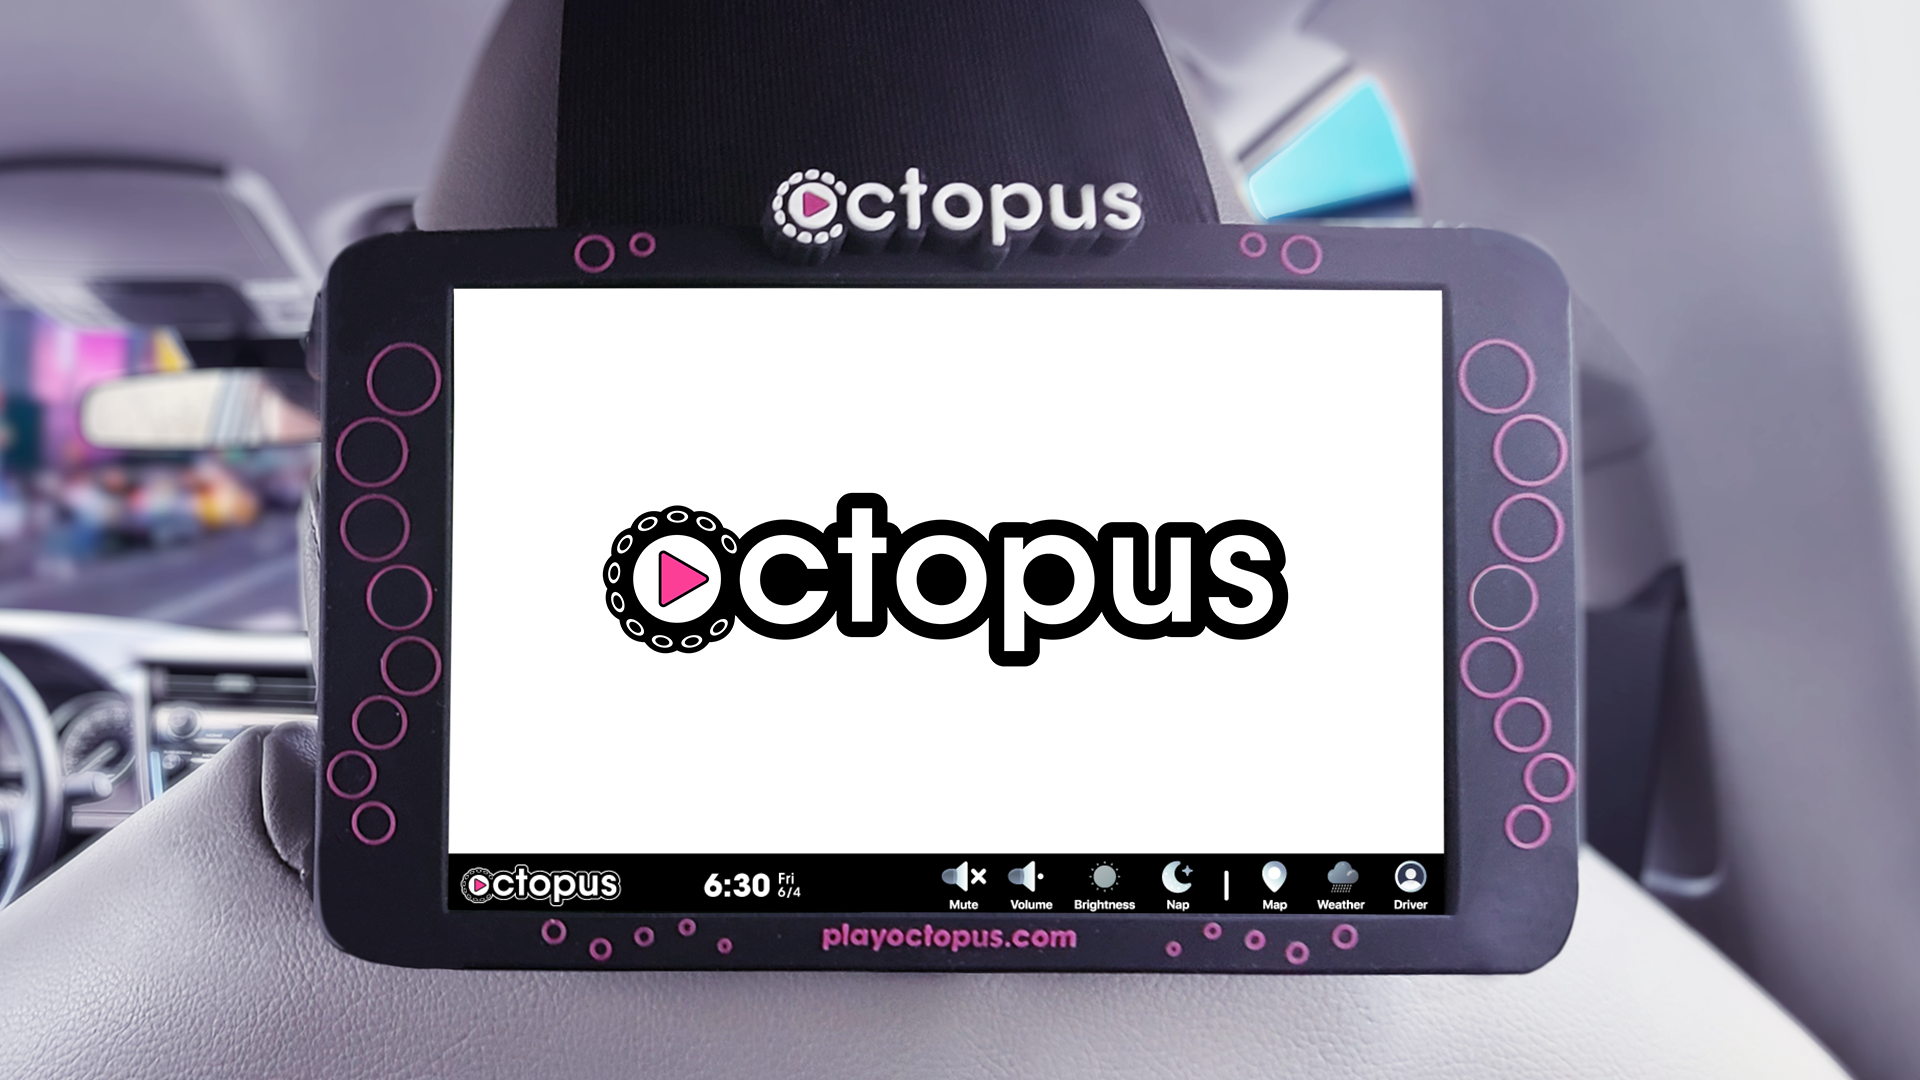 Account play octopus.com